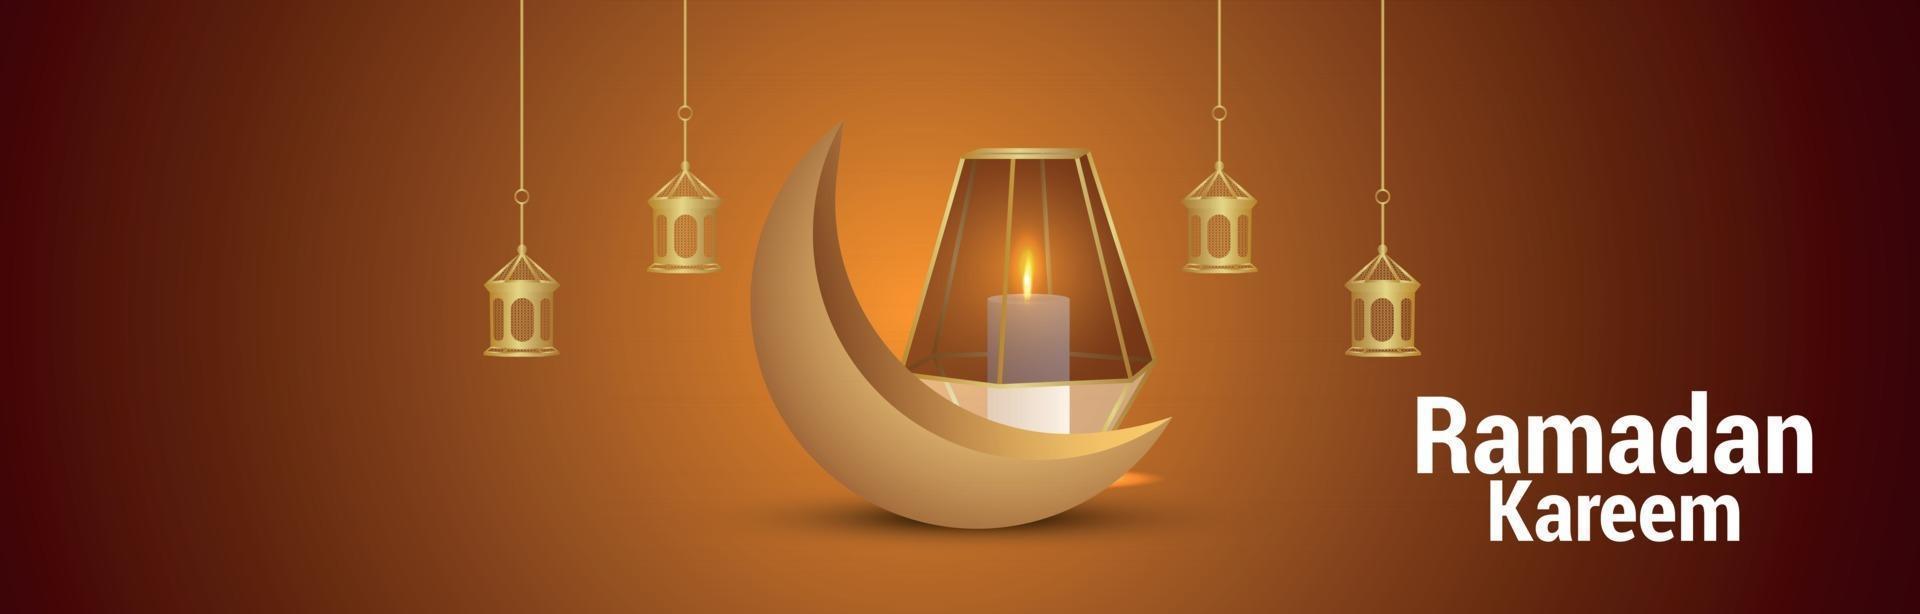 banner ou cabeçalho do festival islâmico ramadan kareem com ilustração criativa vetor